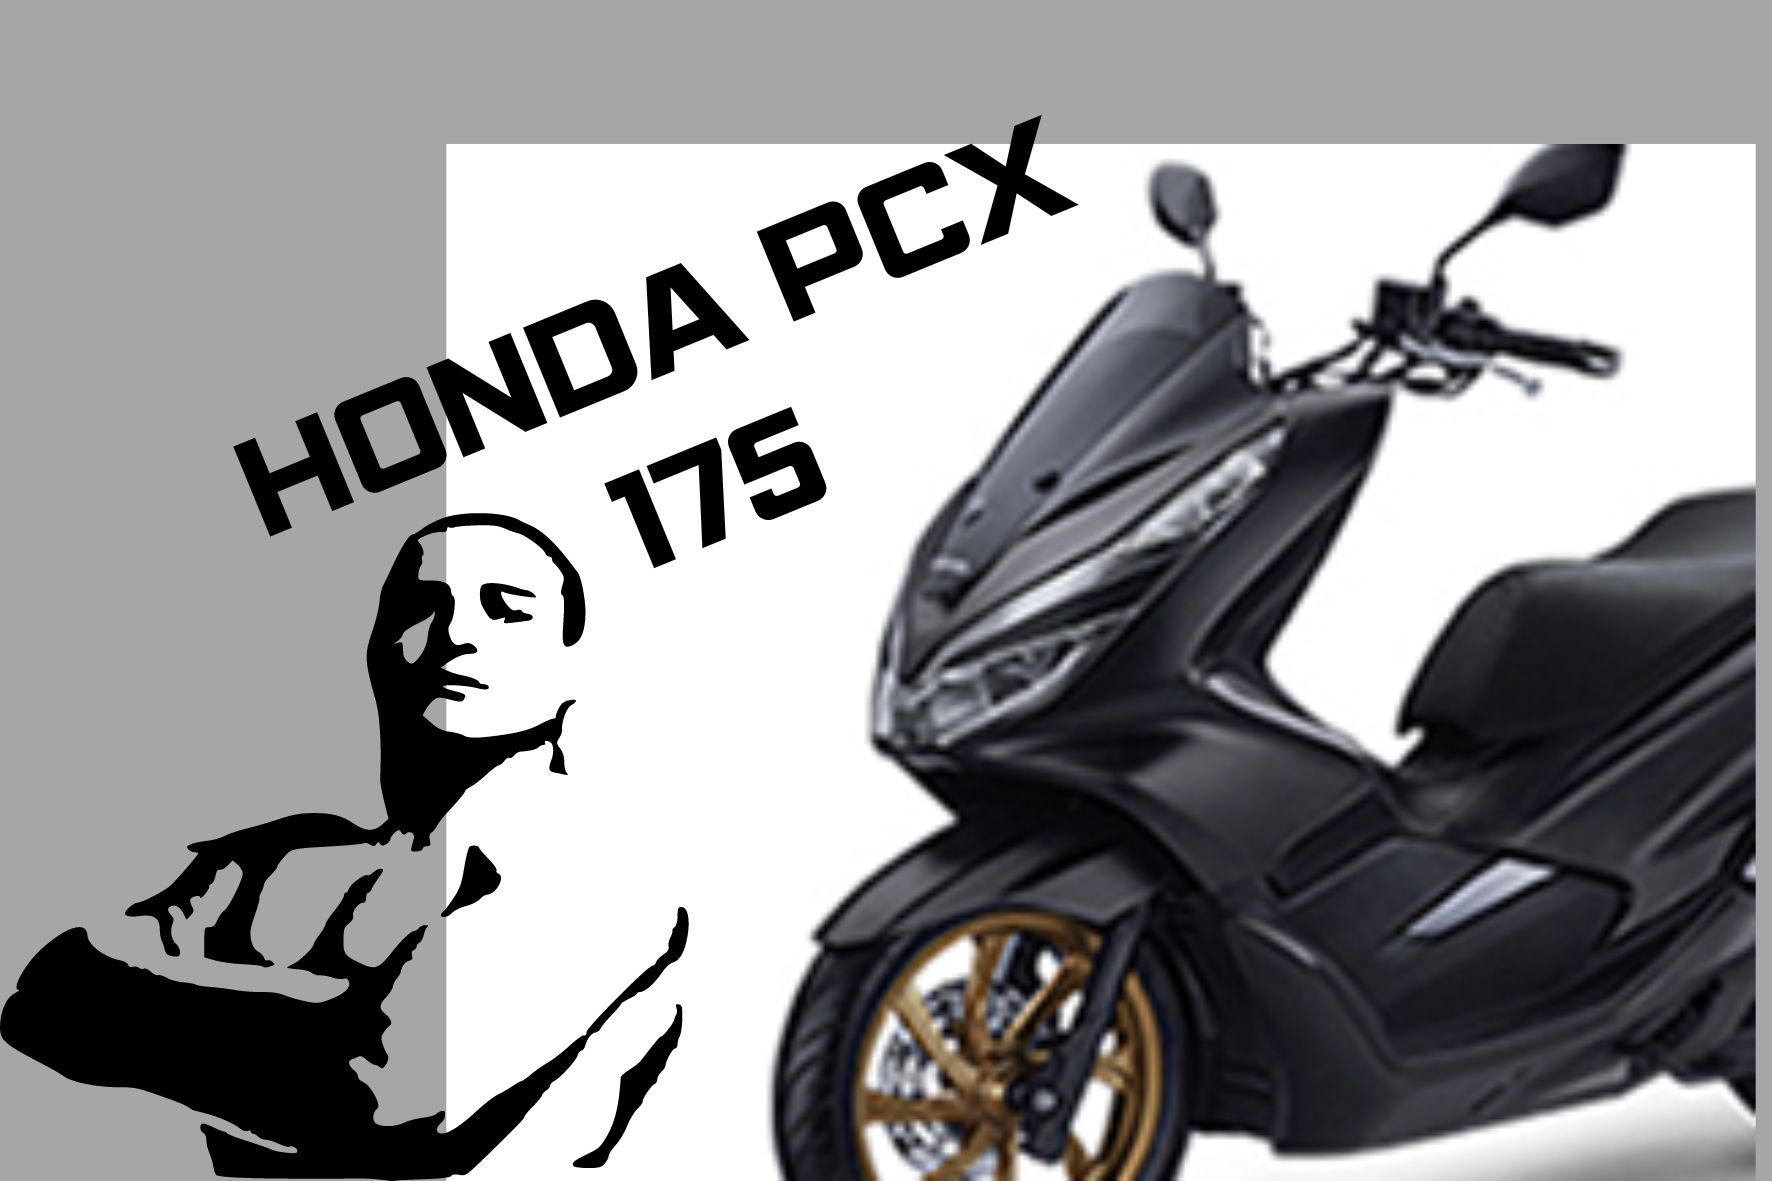 Intip Teknologi Terbaru Honda PCX 175, Semakin Bertenaga dan Tampilan Lebih Macho